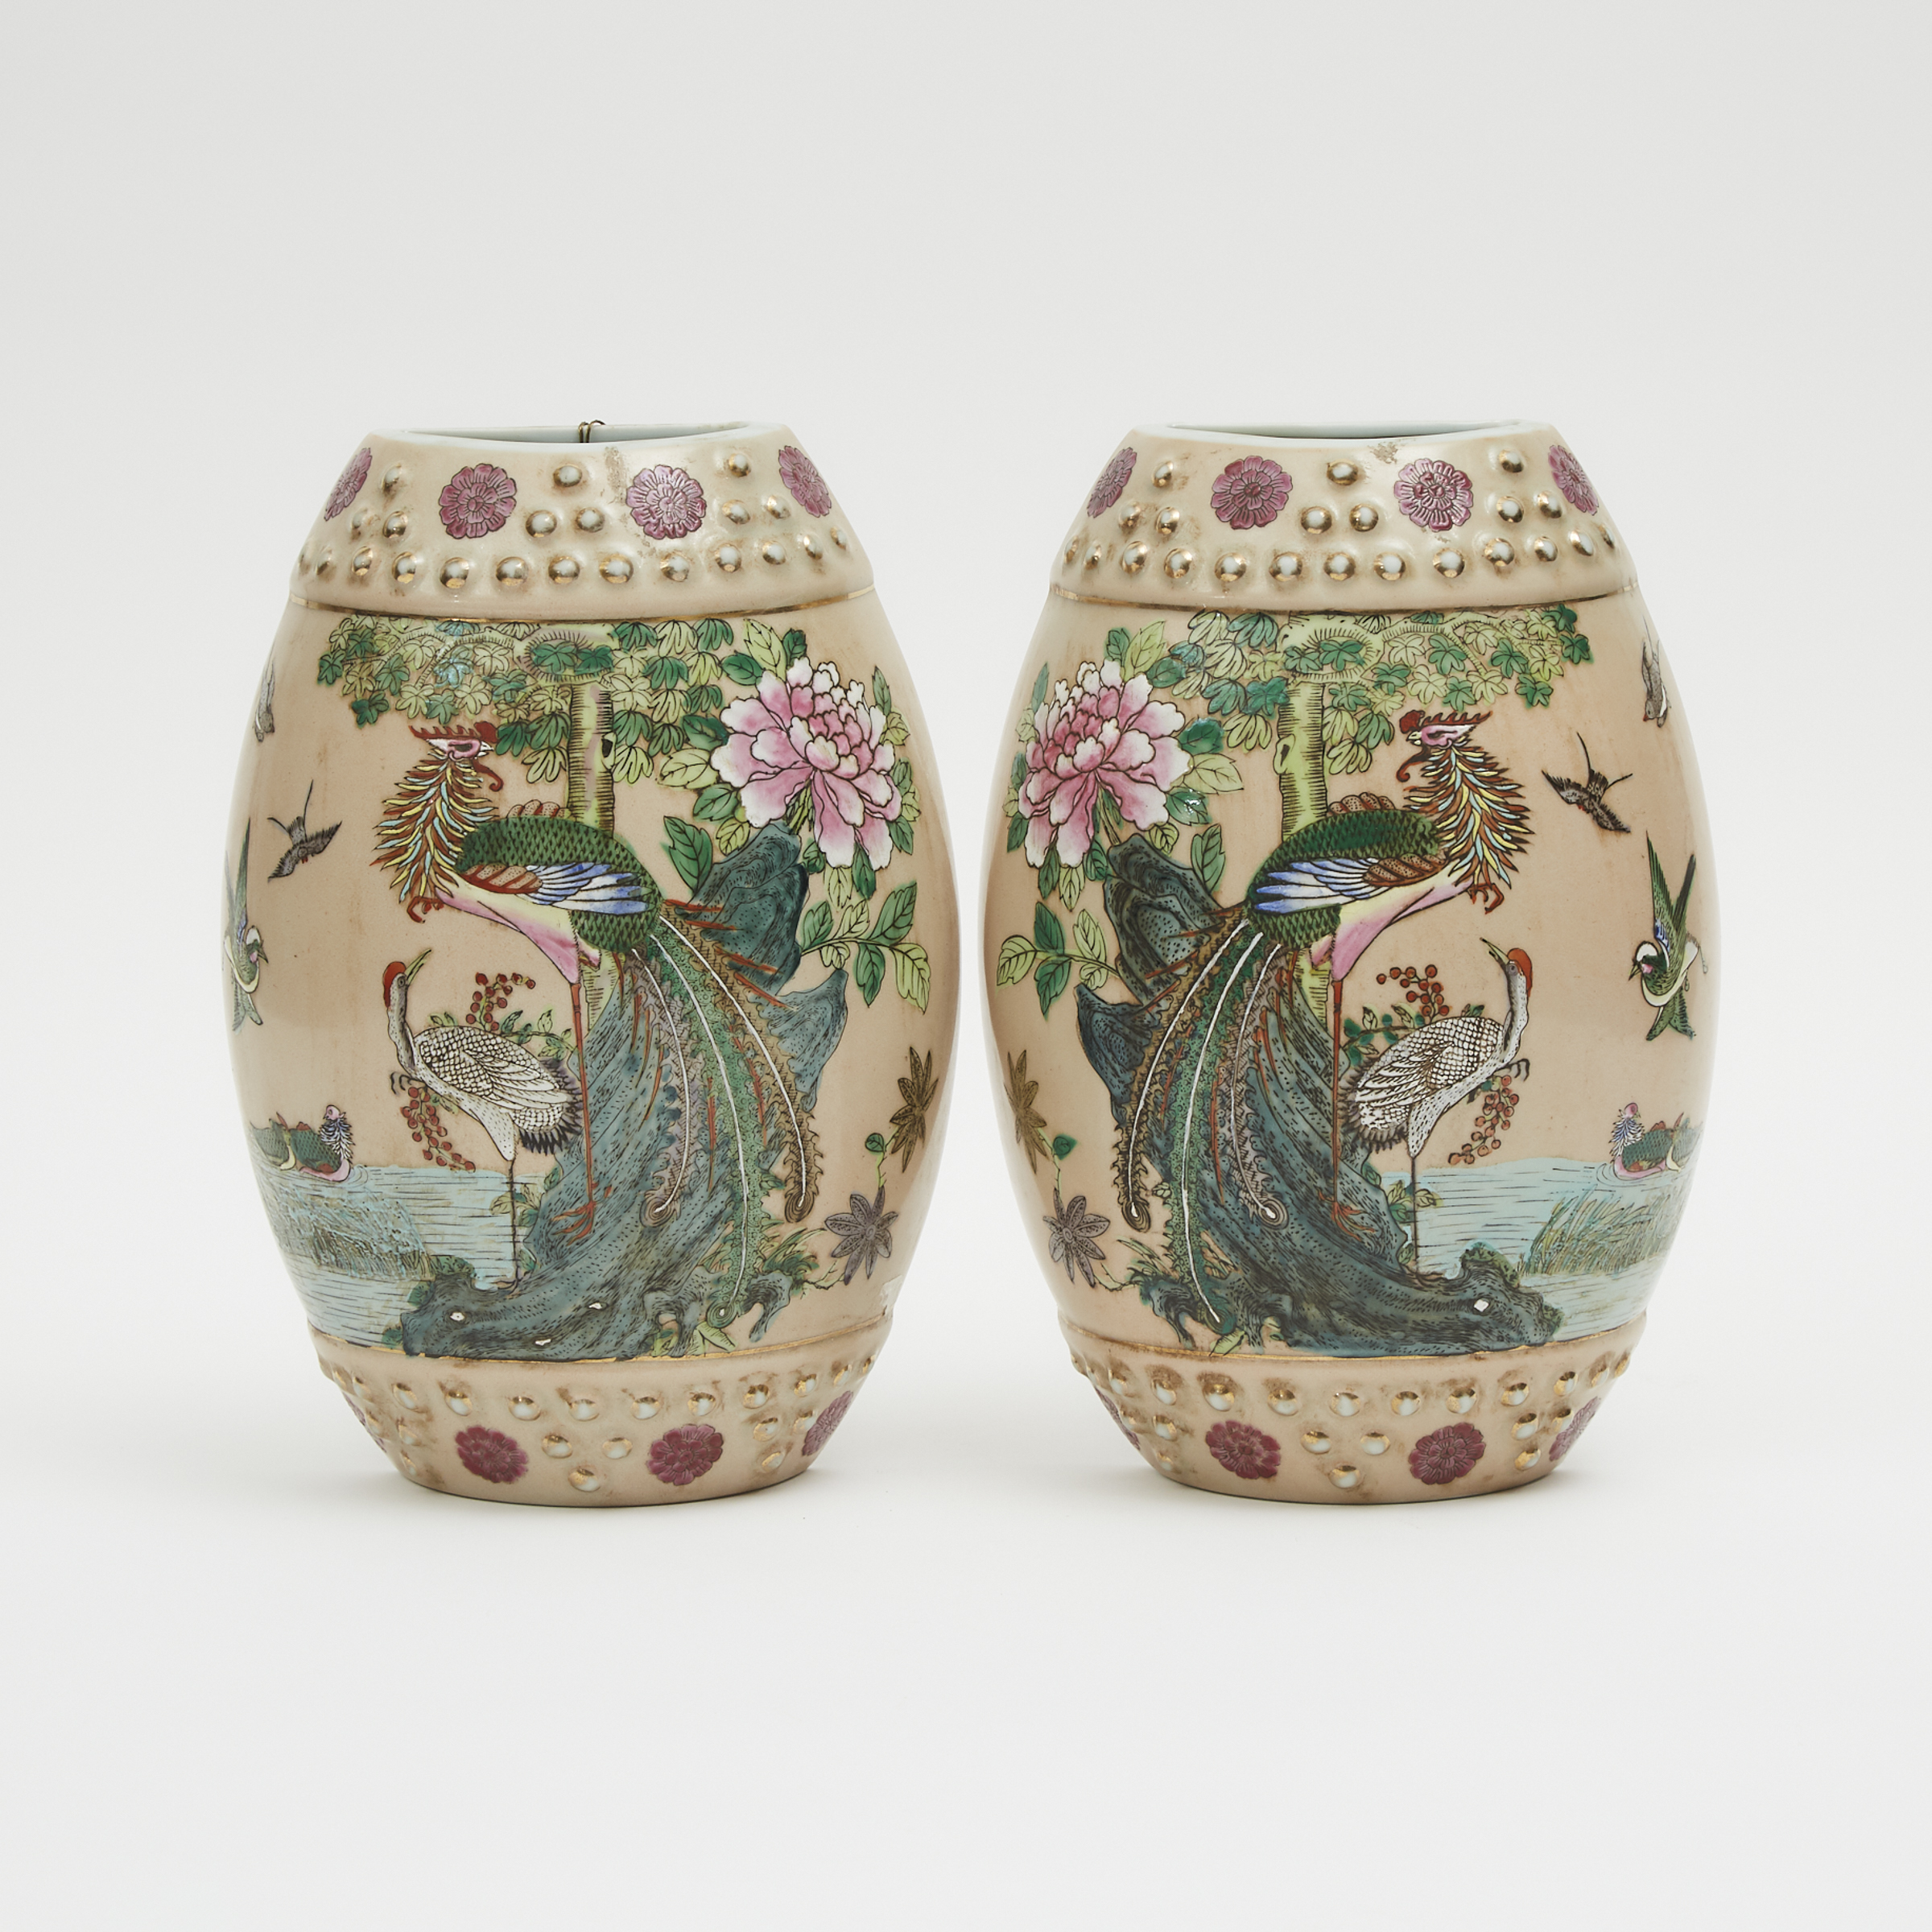 A Pair of Barrel-Form 'Phoenix' Wall Vases